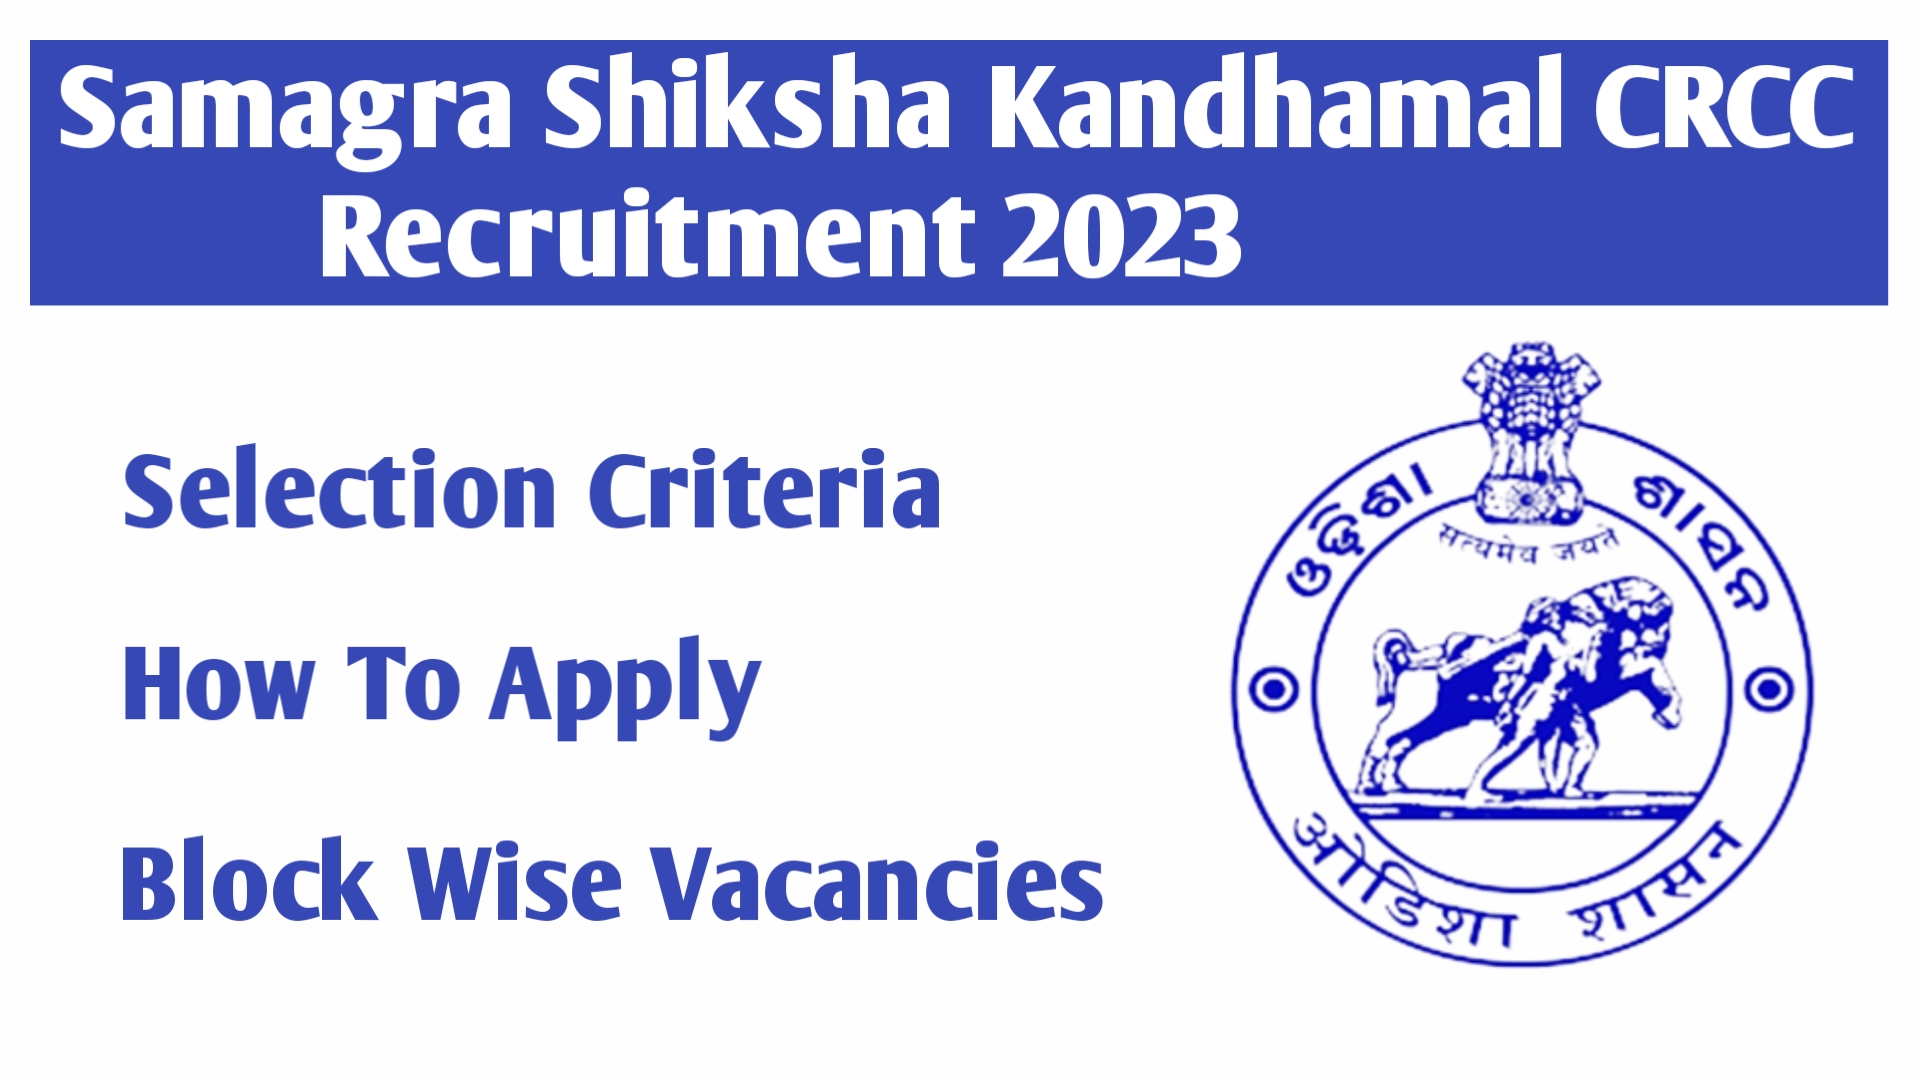 Samagra Shiksha Kandhamal CRCC Recruitment 2023